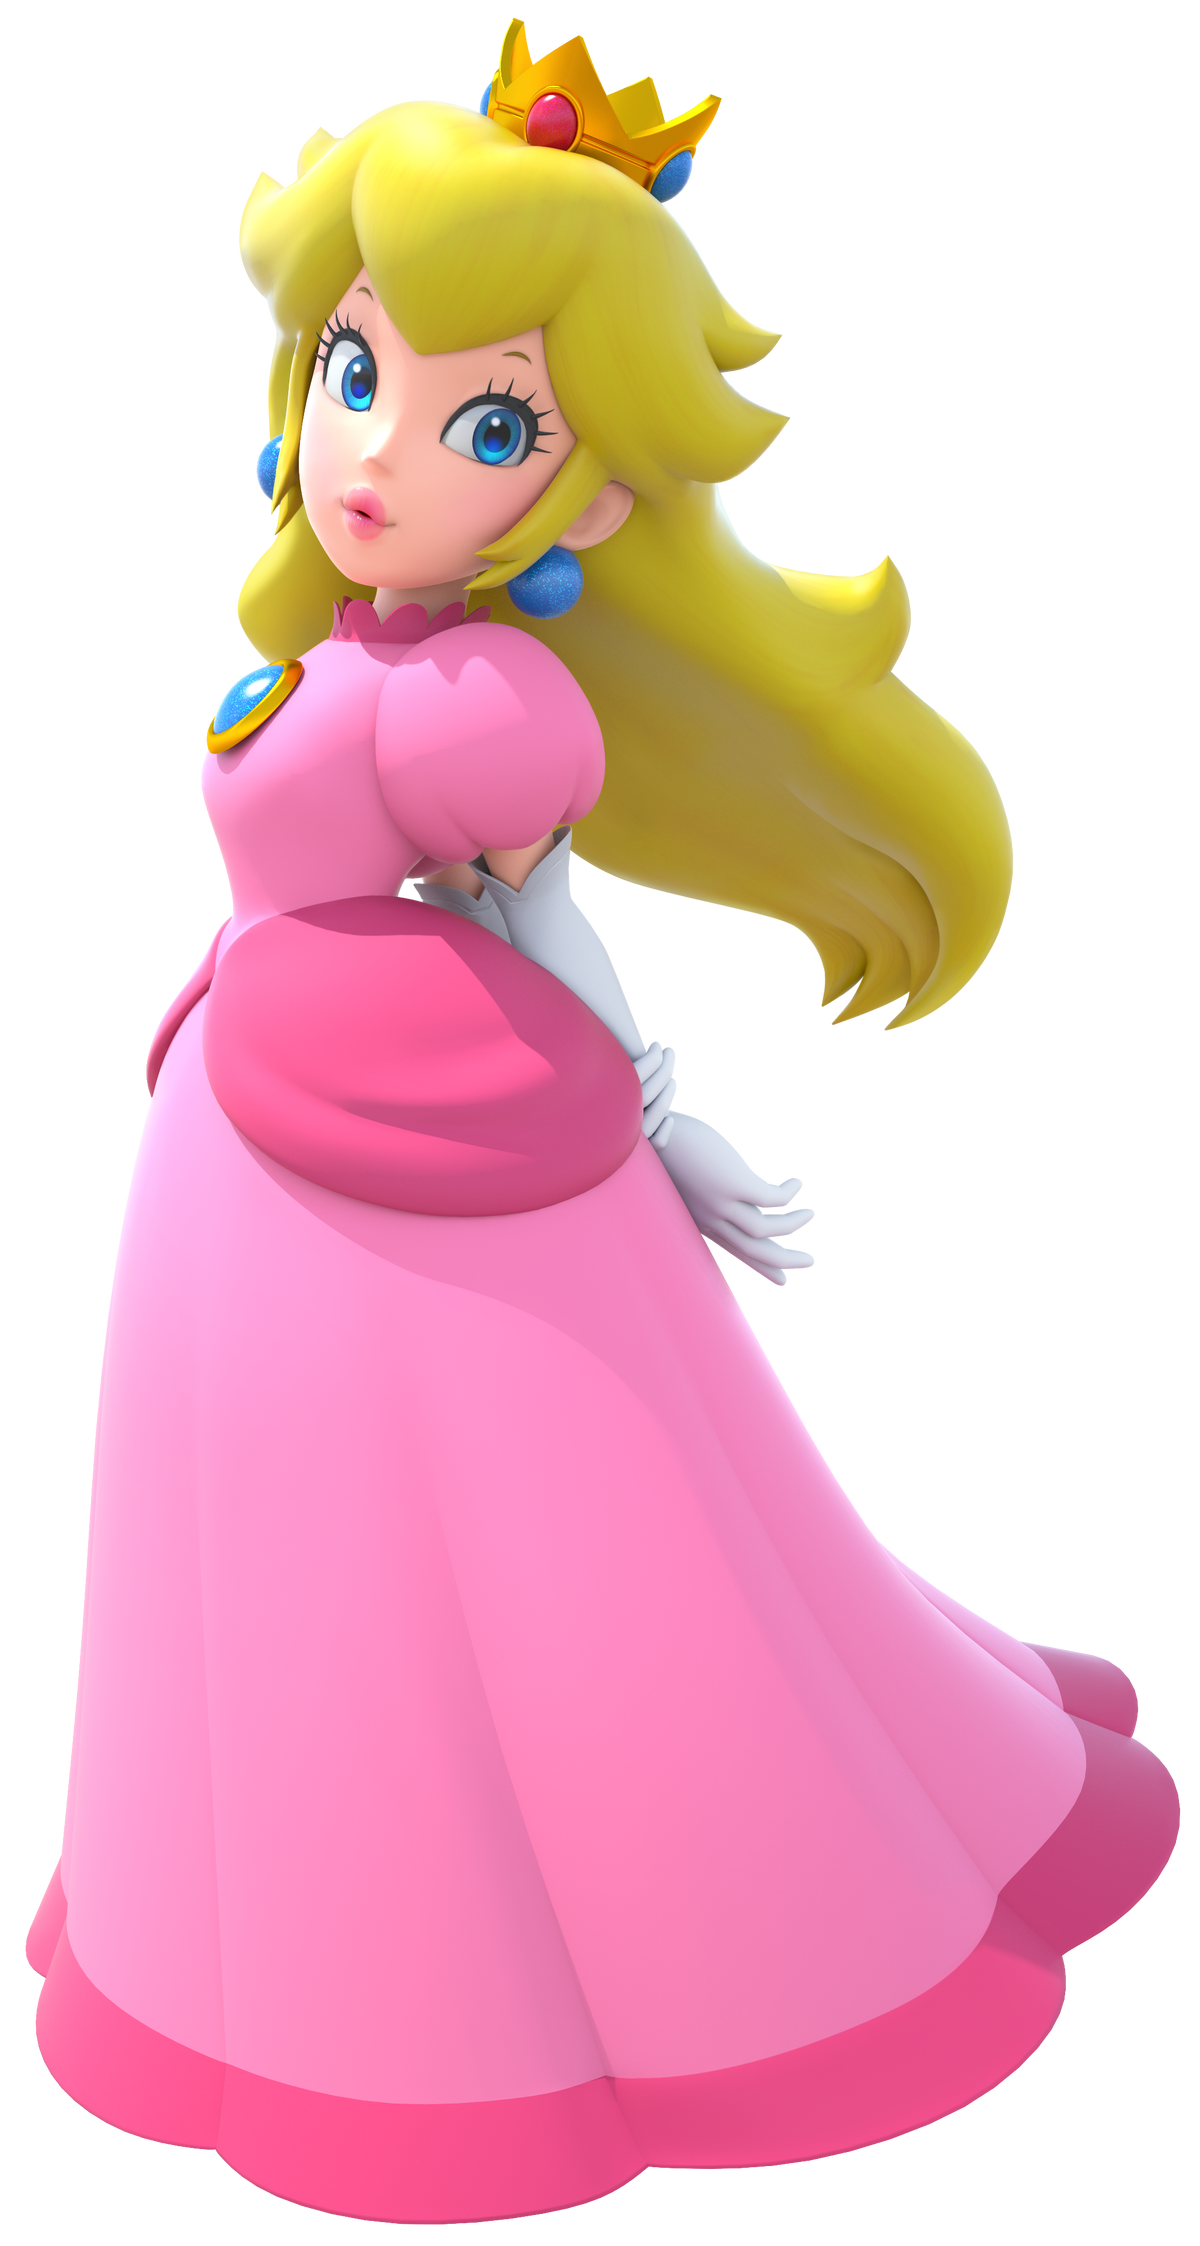 鍔 Construir Insondable Princess Peach Mario Bros Exclusivo Ponerse En 